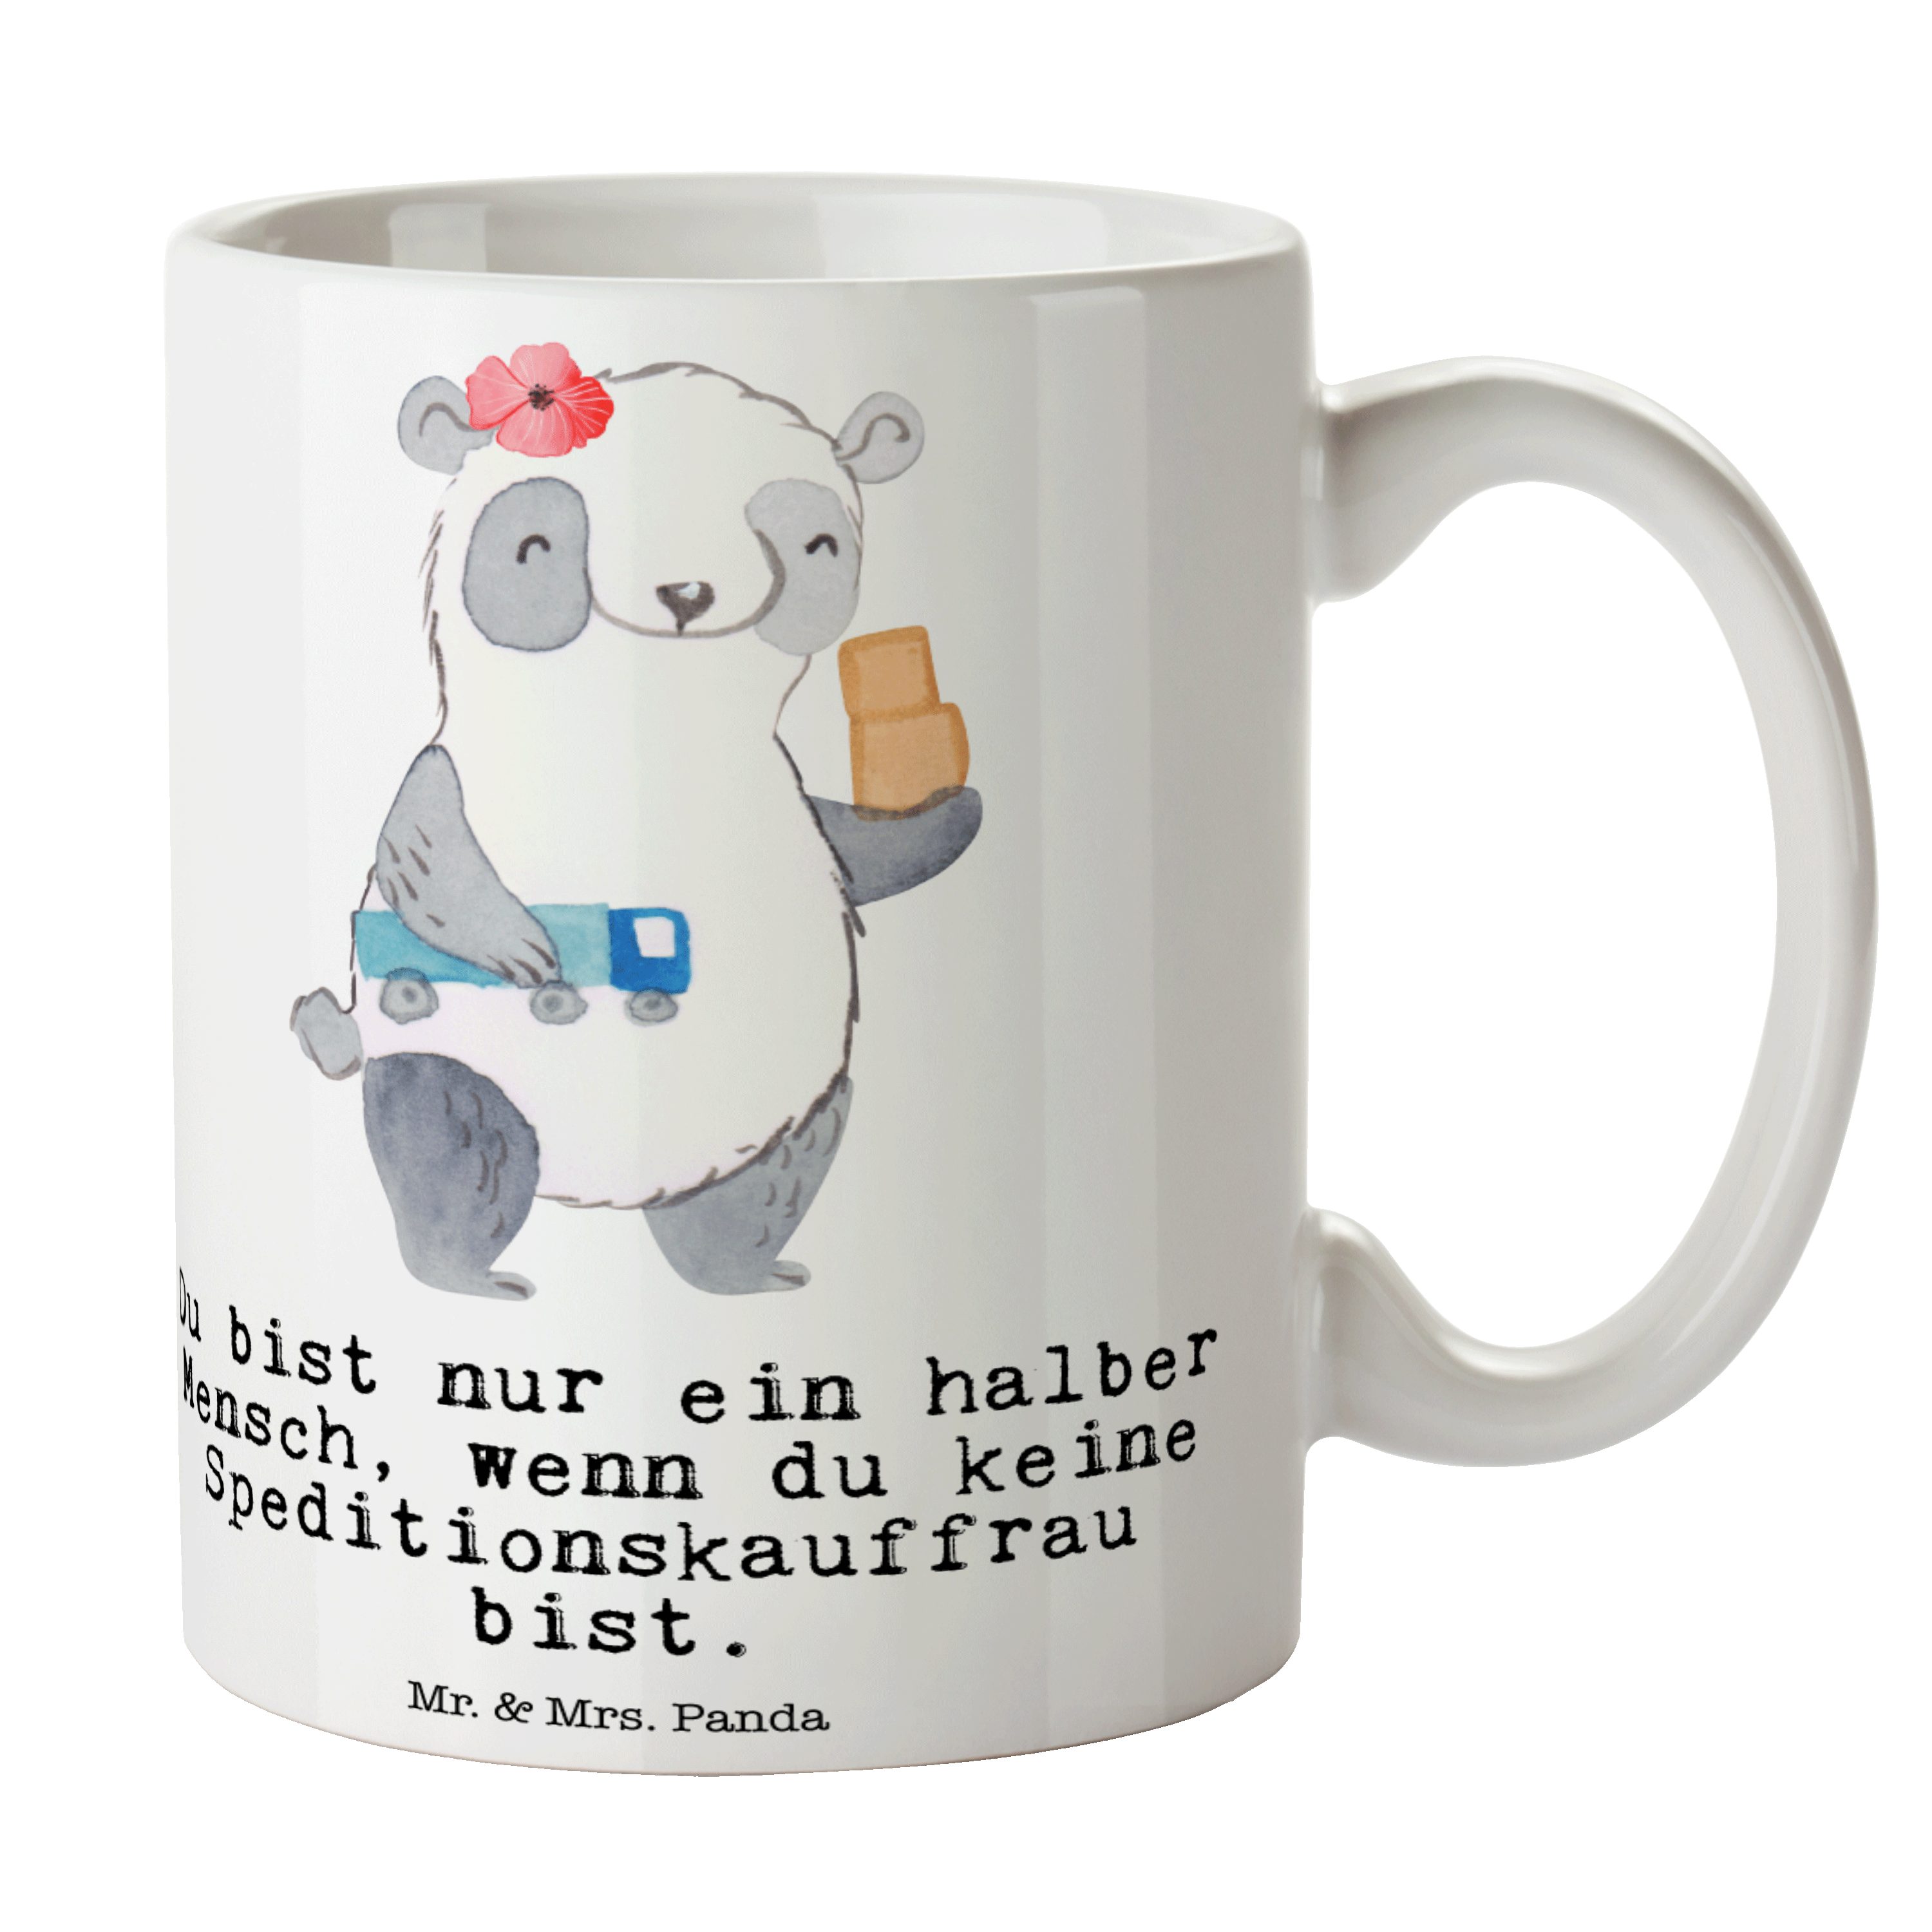 Mr. & Mrs. Panda Tasse Speditionskauffrau mit Herz - Weiß - Geschenk, Tasse Motive, Geschenk, Keramik